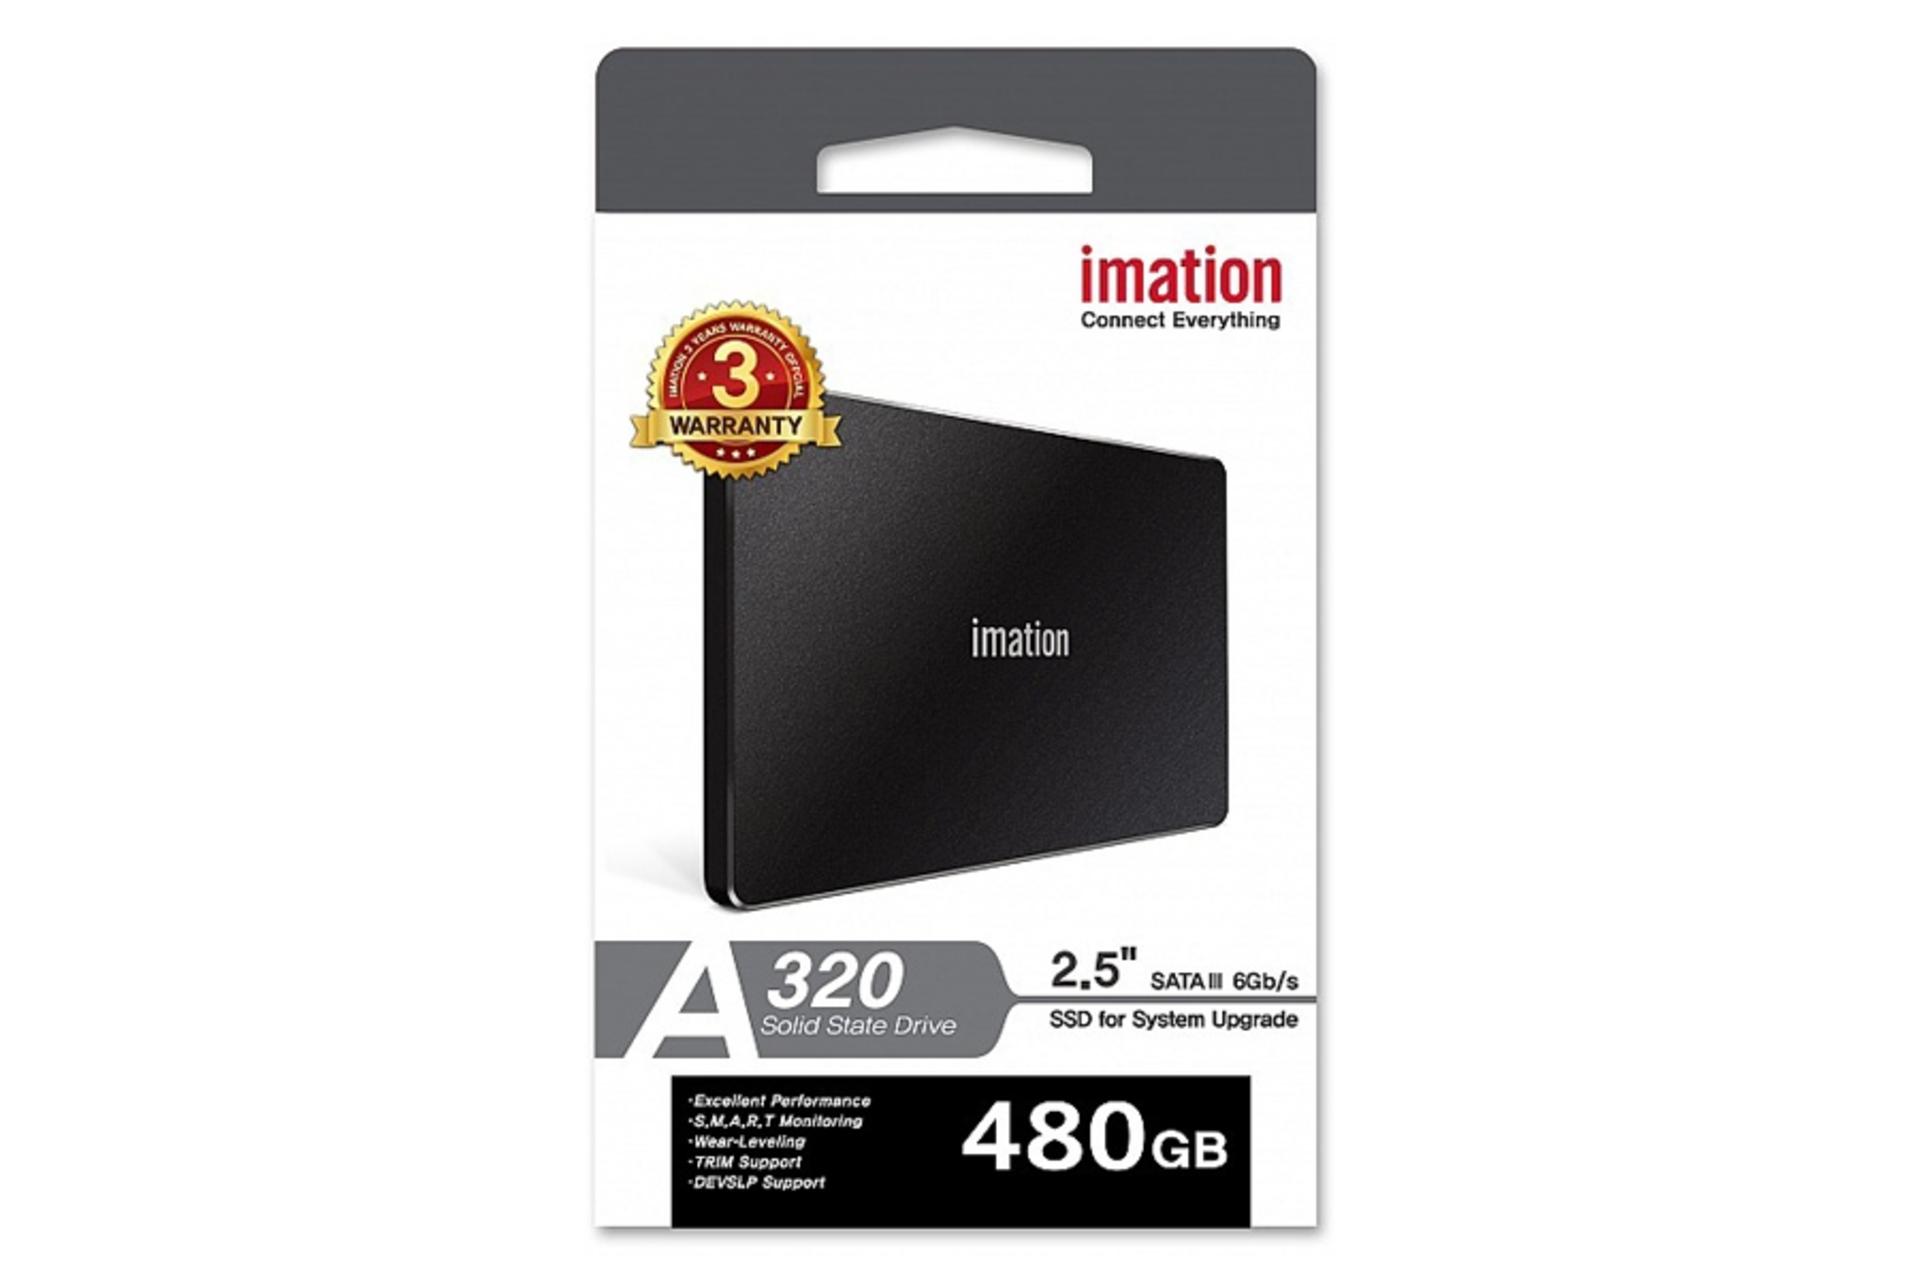 جعبه SSD ایمیشن Imation A320 SATA 2.5 Inch 480GB ظرفیت 480 گیگابایت